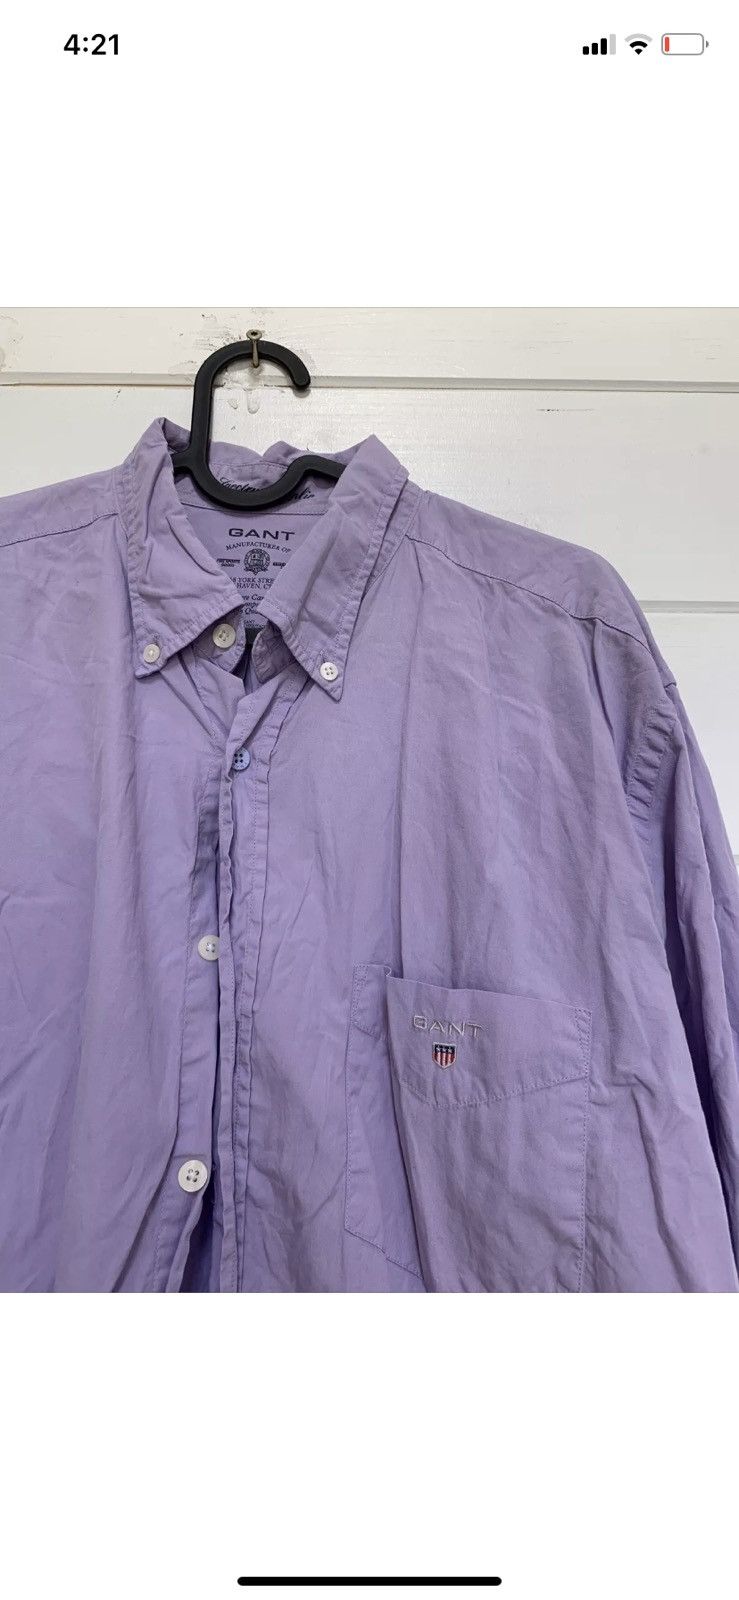 Gant GANT Shirt Purple Cotton Slim Fit Spectrum Poplin Size L Size US L / EU 52-54 / 3 - 2 Preview